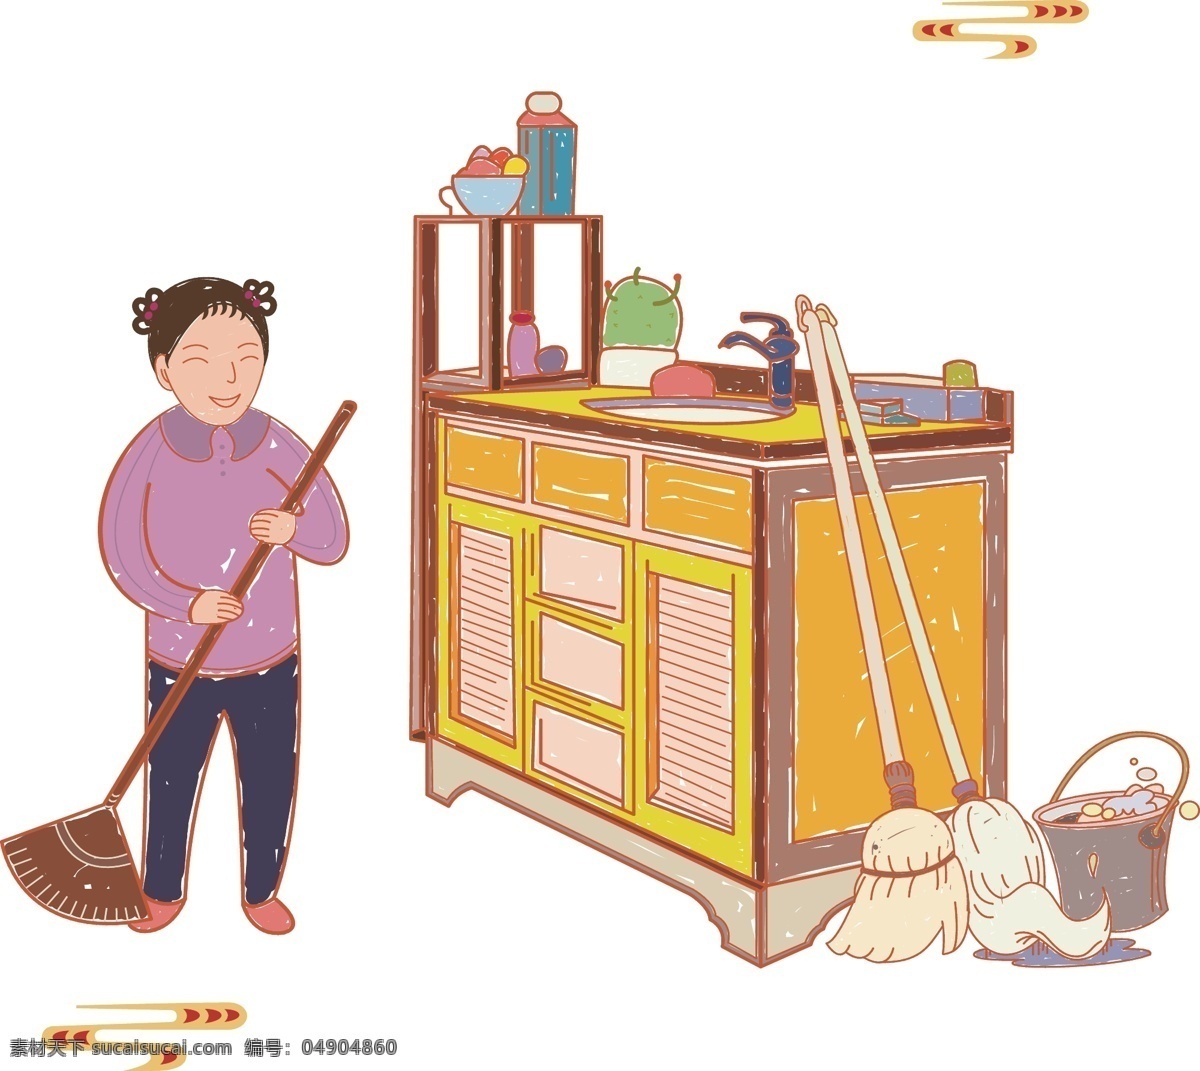 中国 风 手绘 打扫 卫生 小女孩 日常 场景 中国风 日常场景 熟悉 扫把 中柜 羊角辫 扫帚 帮忙 在家 反应 社会 怀旧